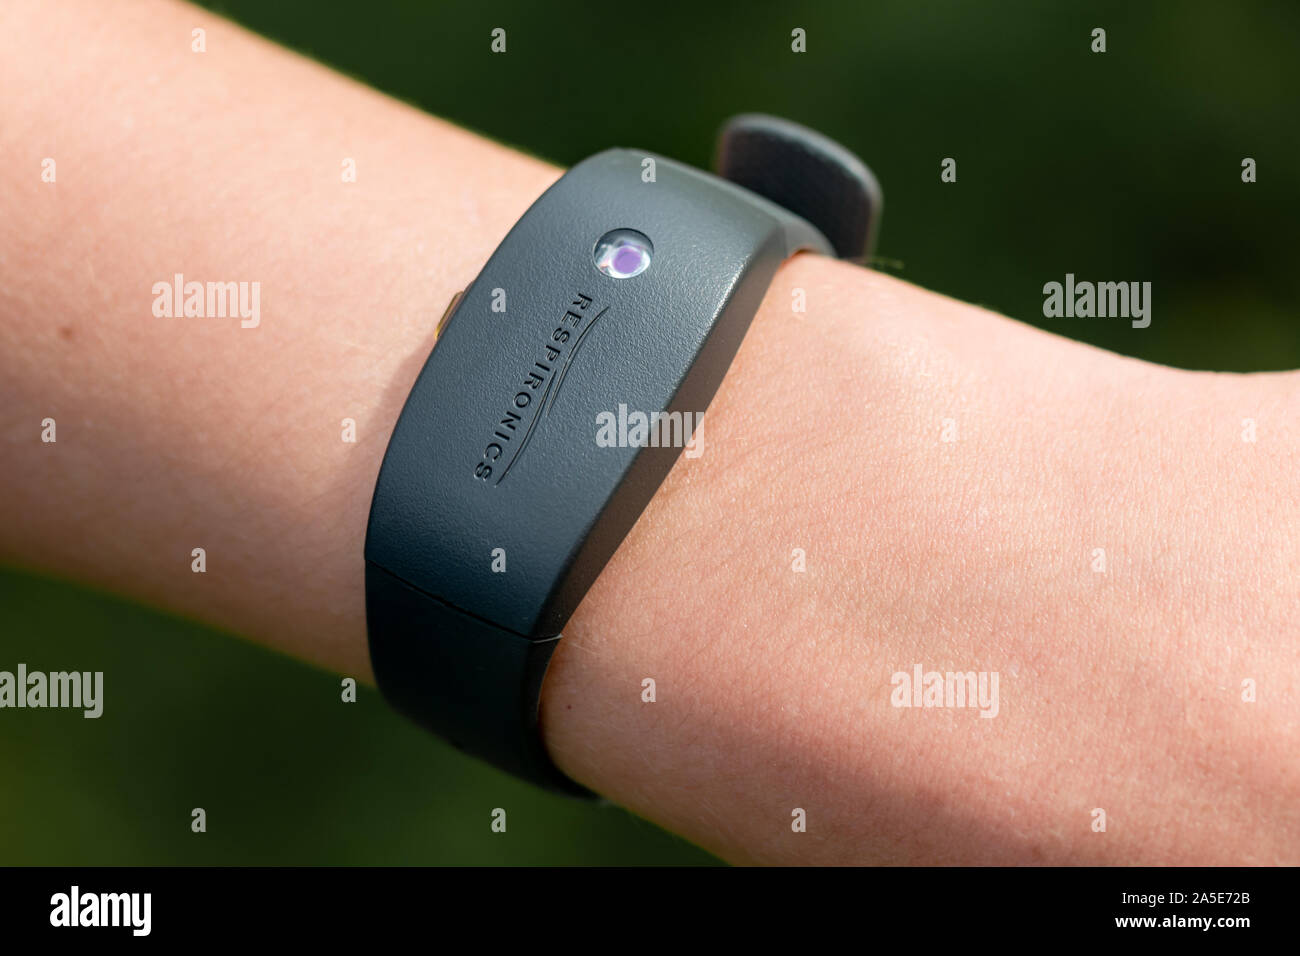 Un bras portant un Philips Respironics Actiwatch, une recherche clinique-grade tracker watch pour l'insomnie, les études sur le sommeil et la surveillance de l'activité Banque D'Images